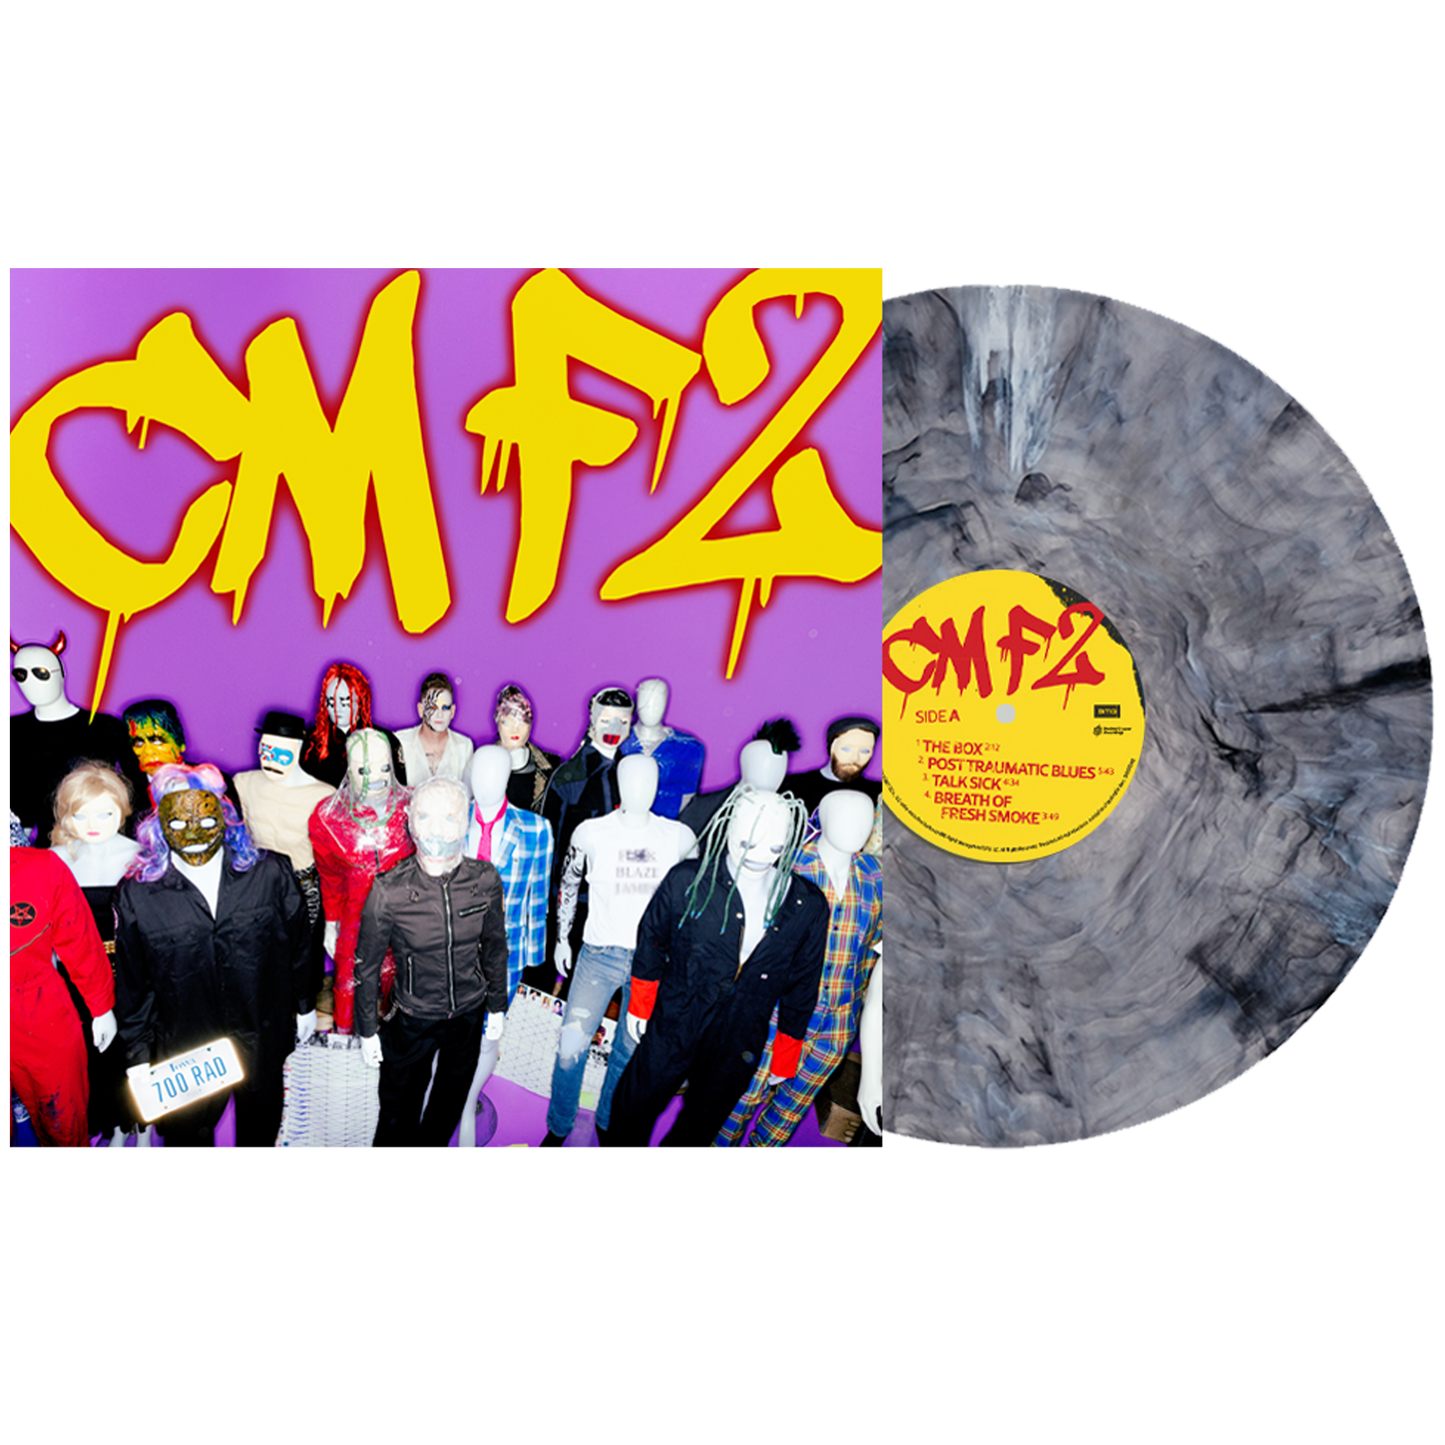 Corey Taylor "CMF2" Exclusive Vinyl in Bleach color